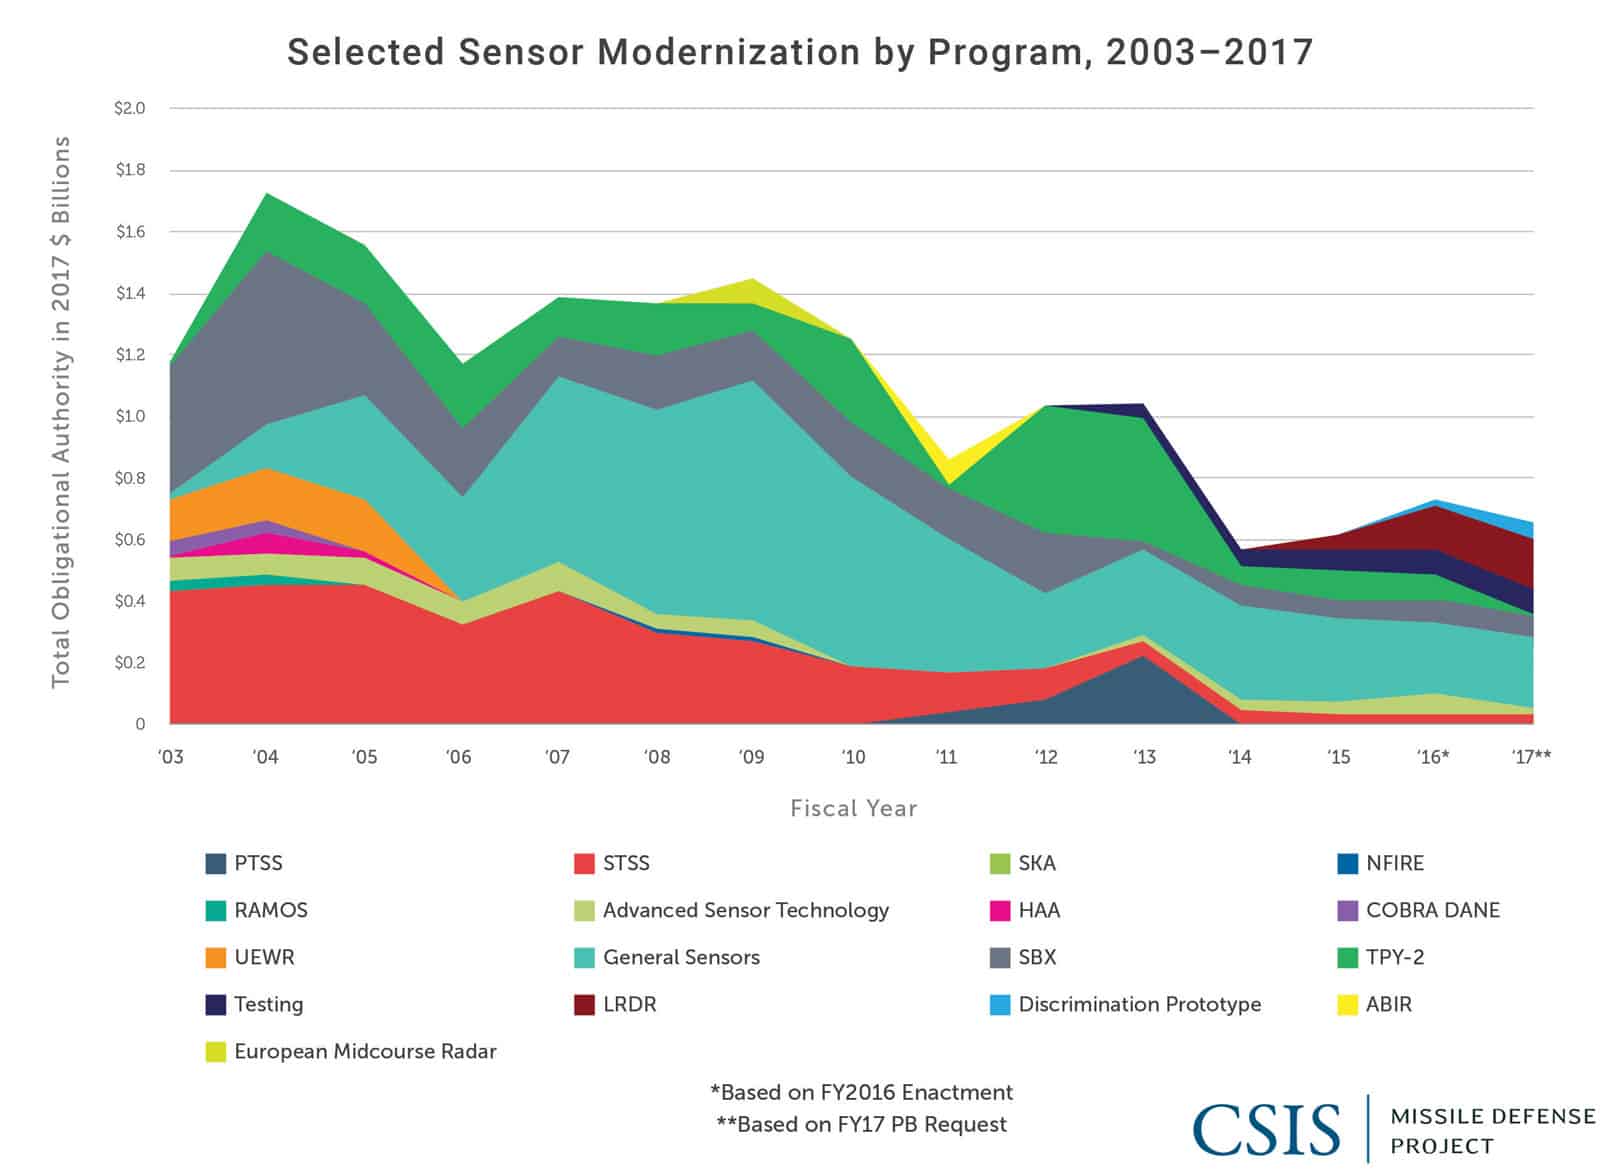 Selected Sensor Modernization by Program, 2003-2017